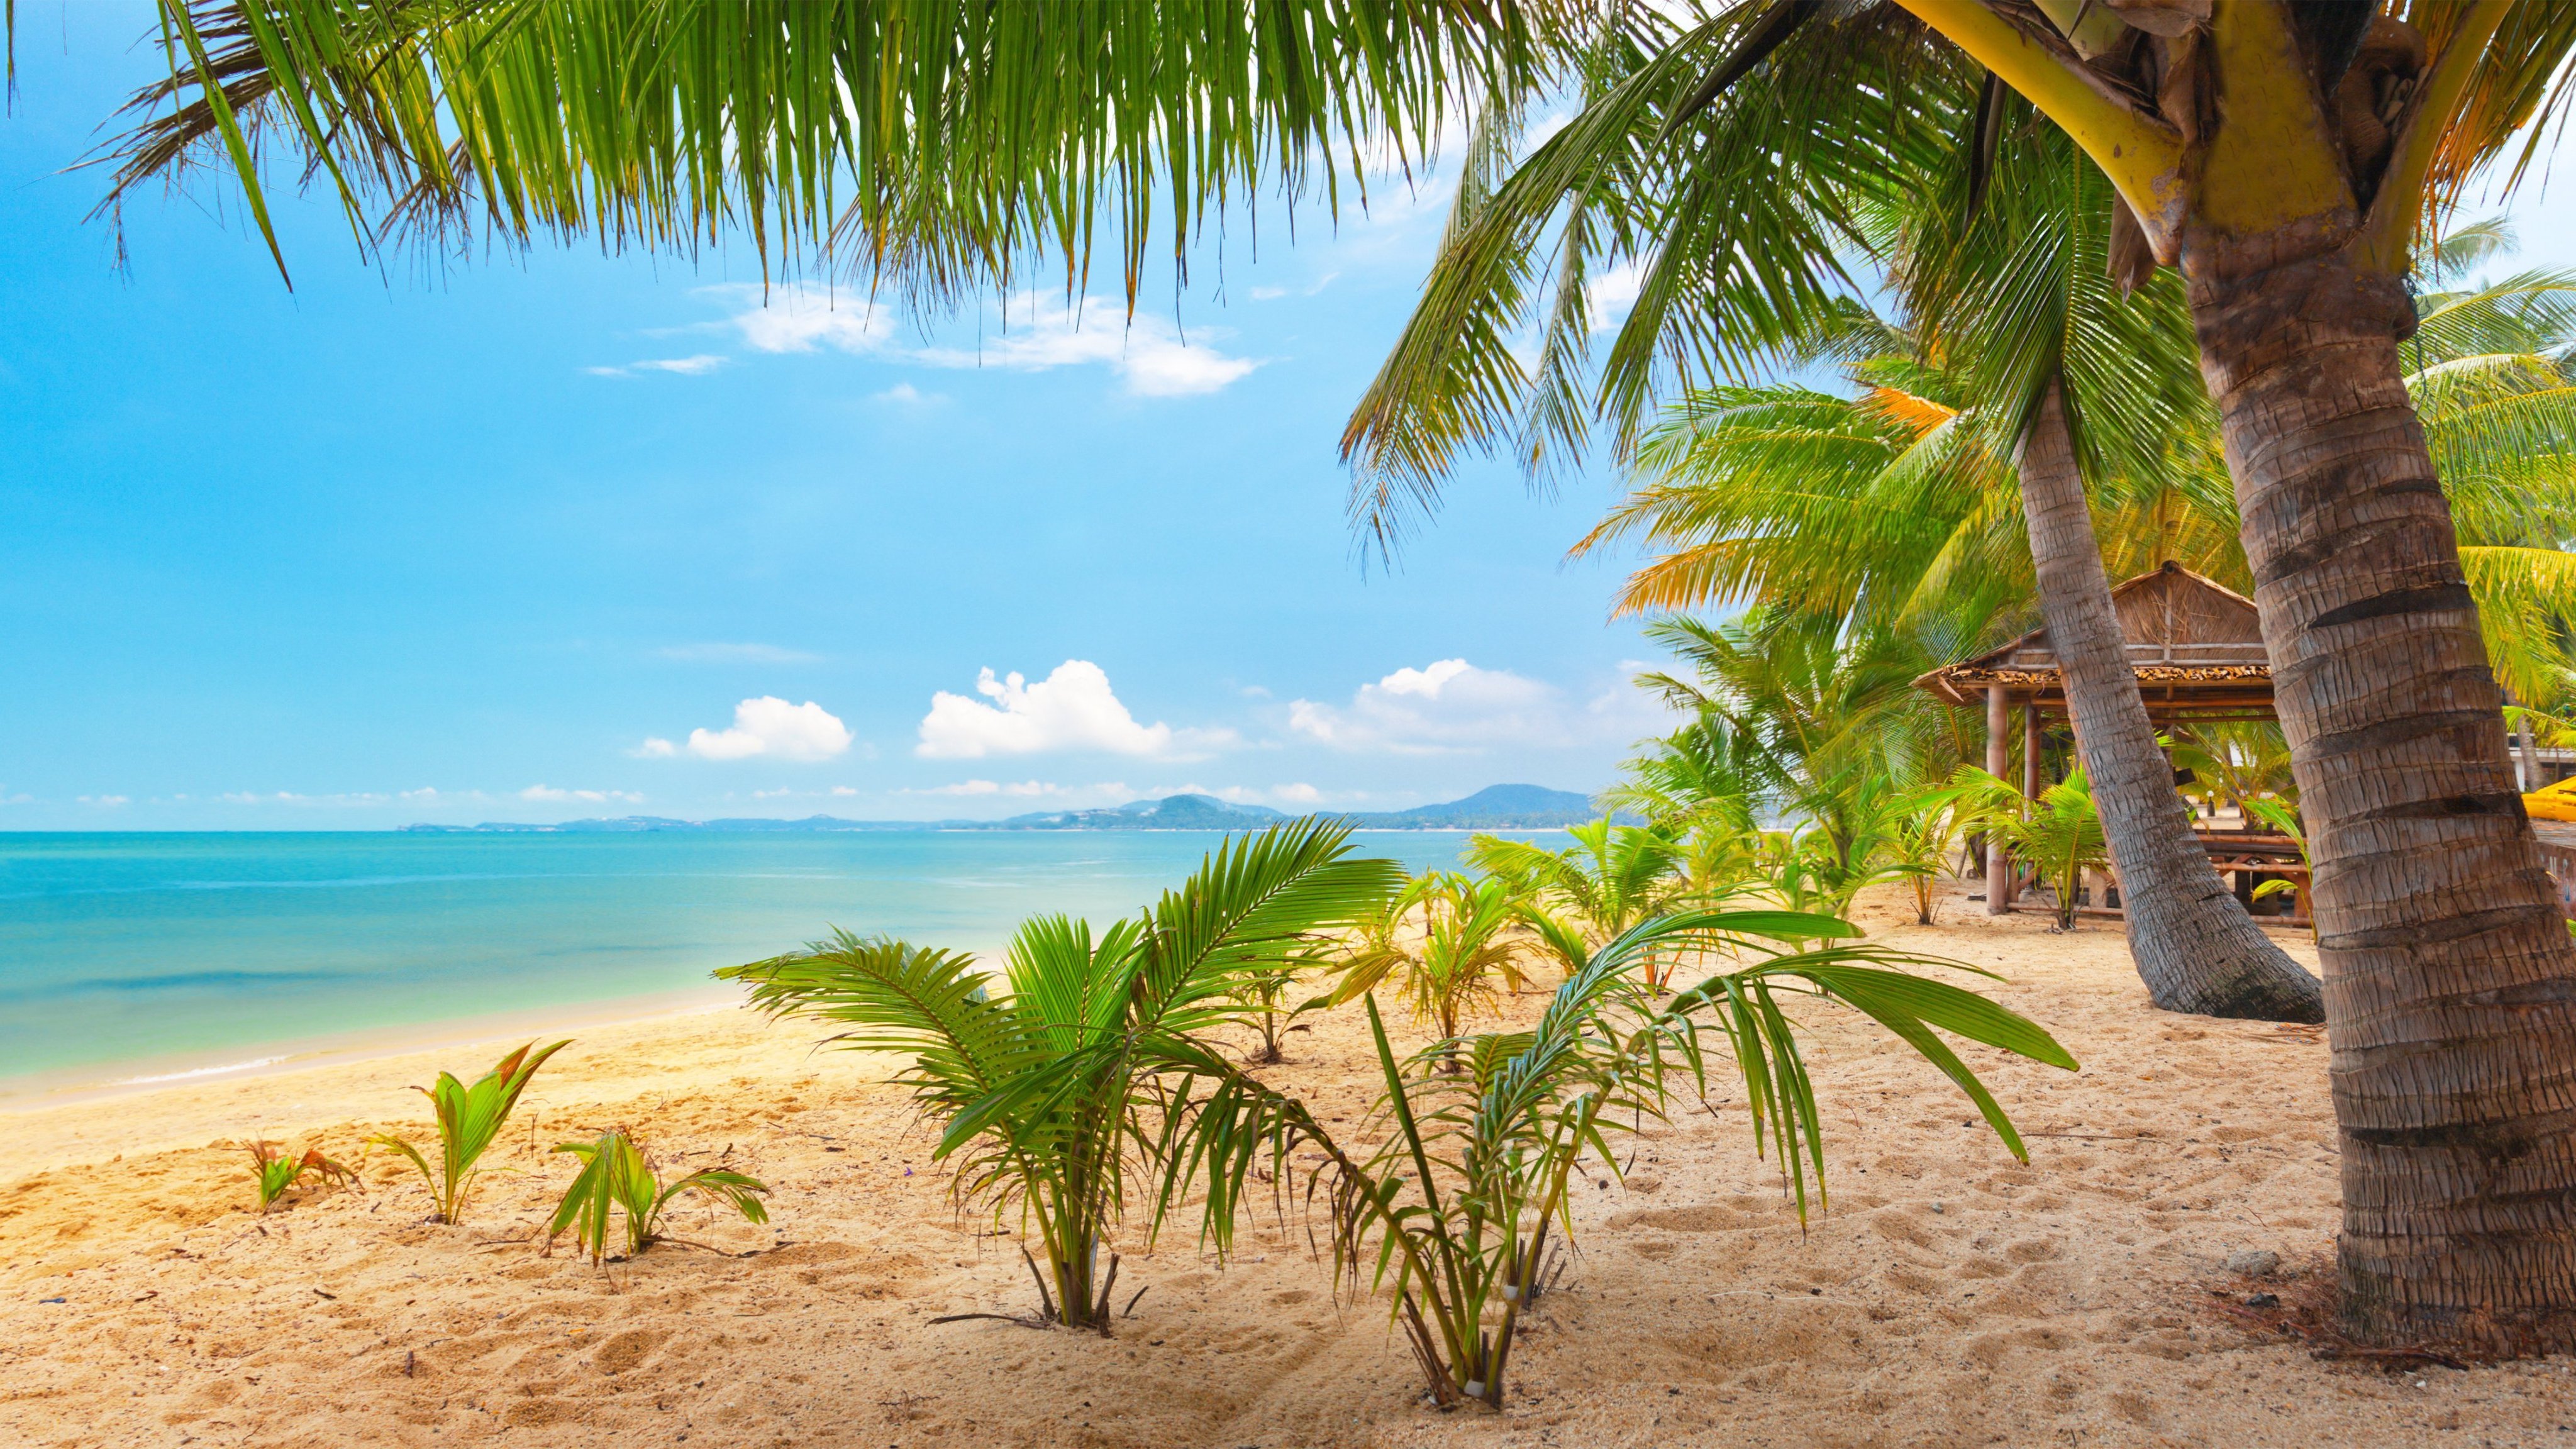 Beach tree. Тропический пляж. Пальмы солнце. Море пальмы. Море пляж пальмы.